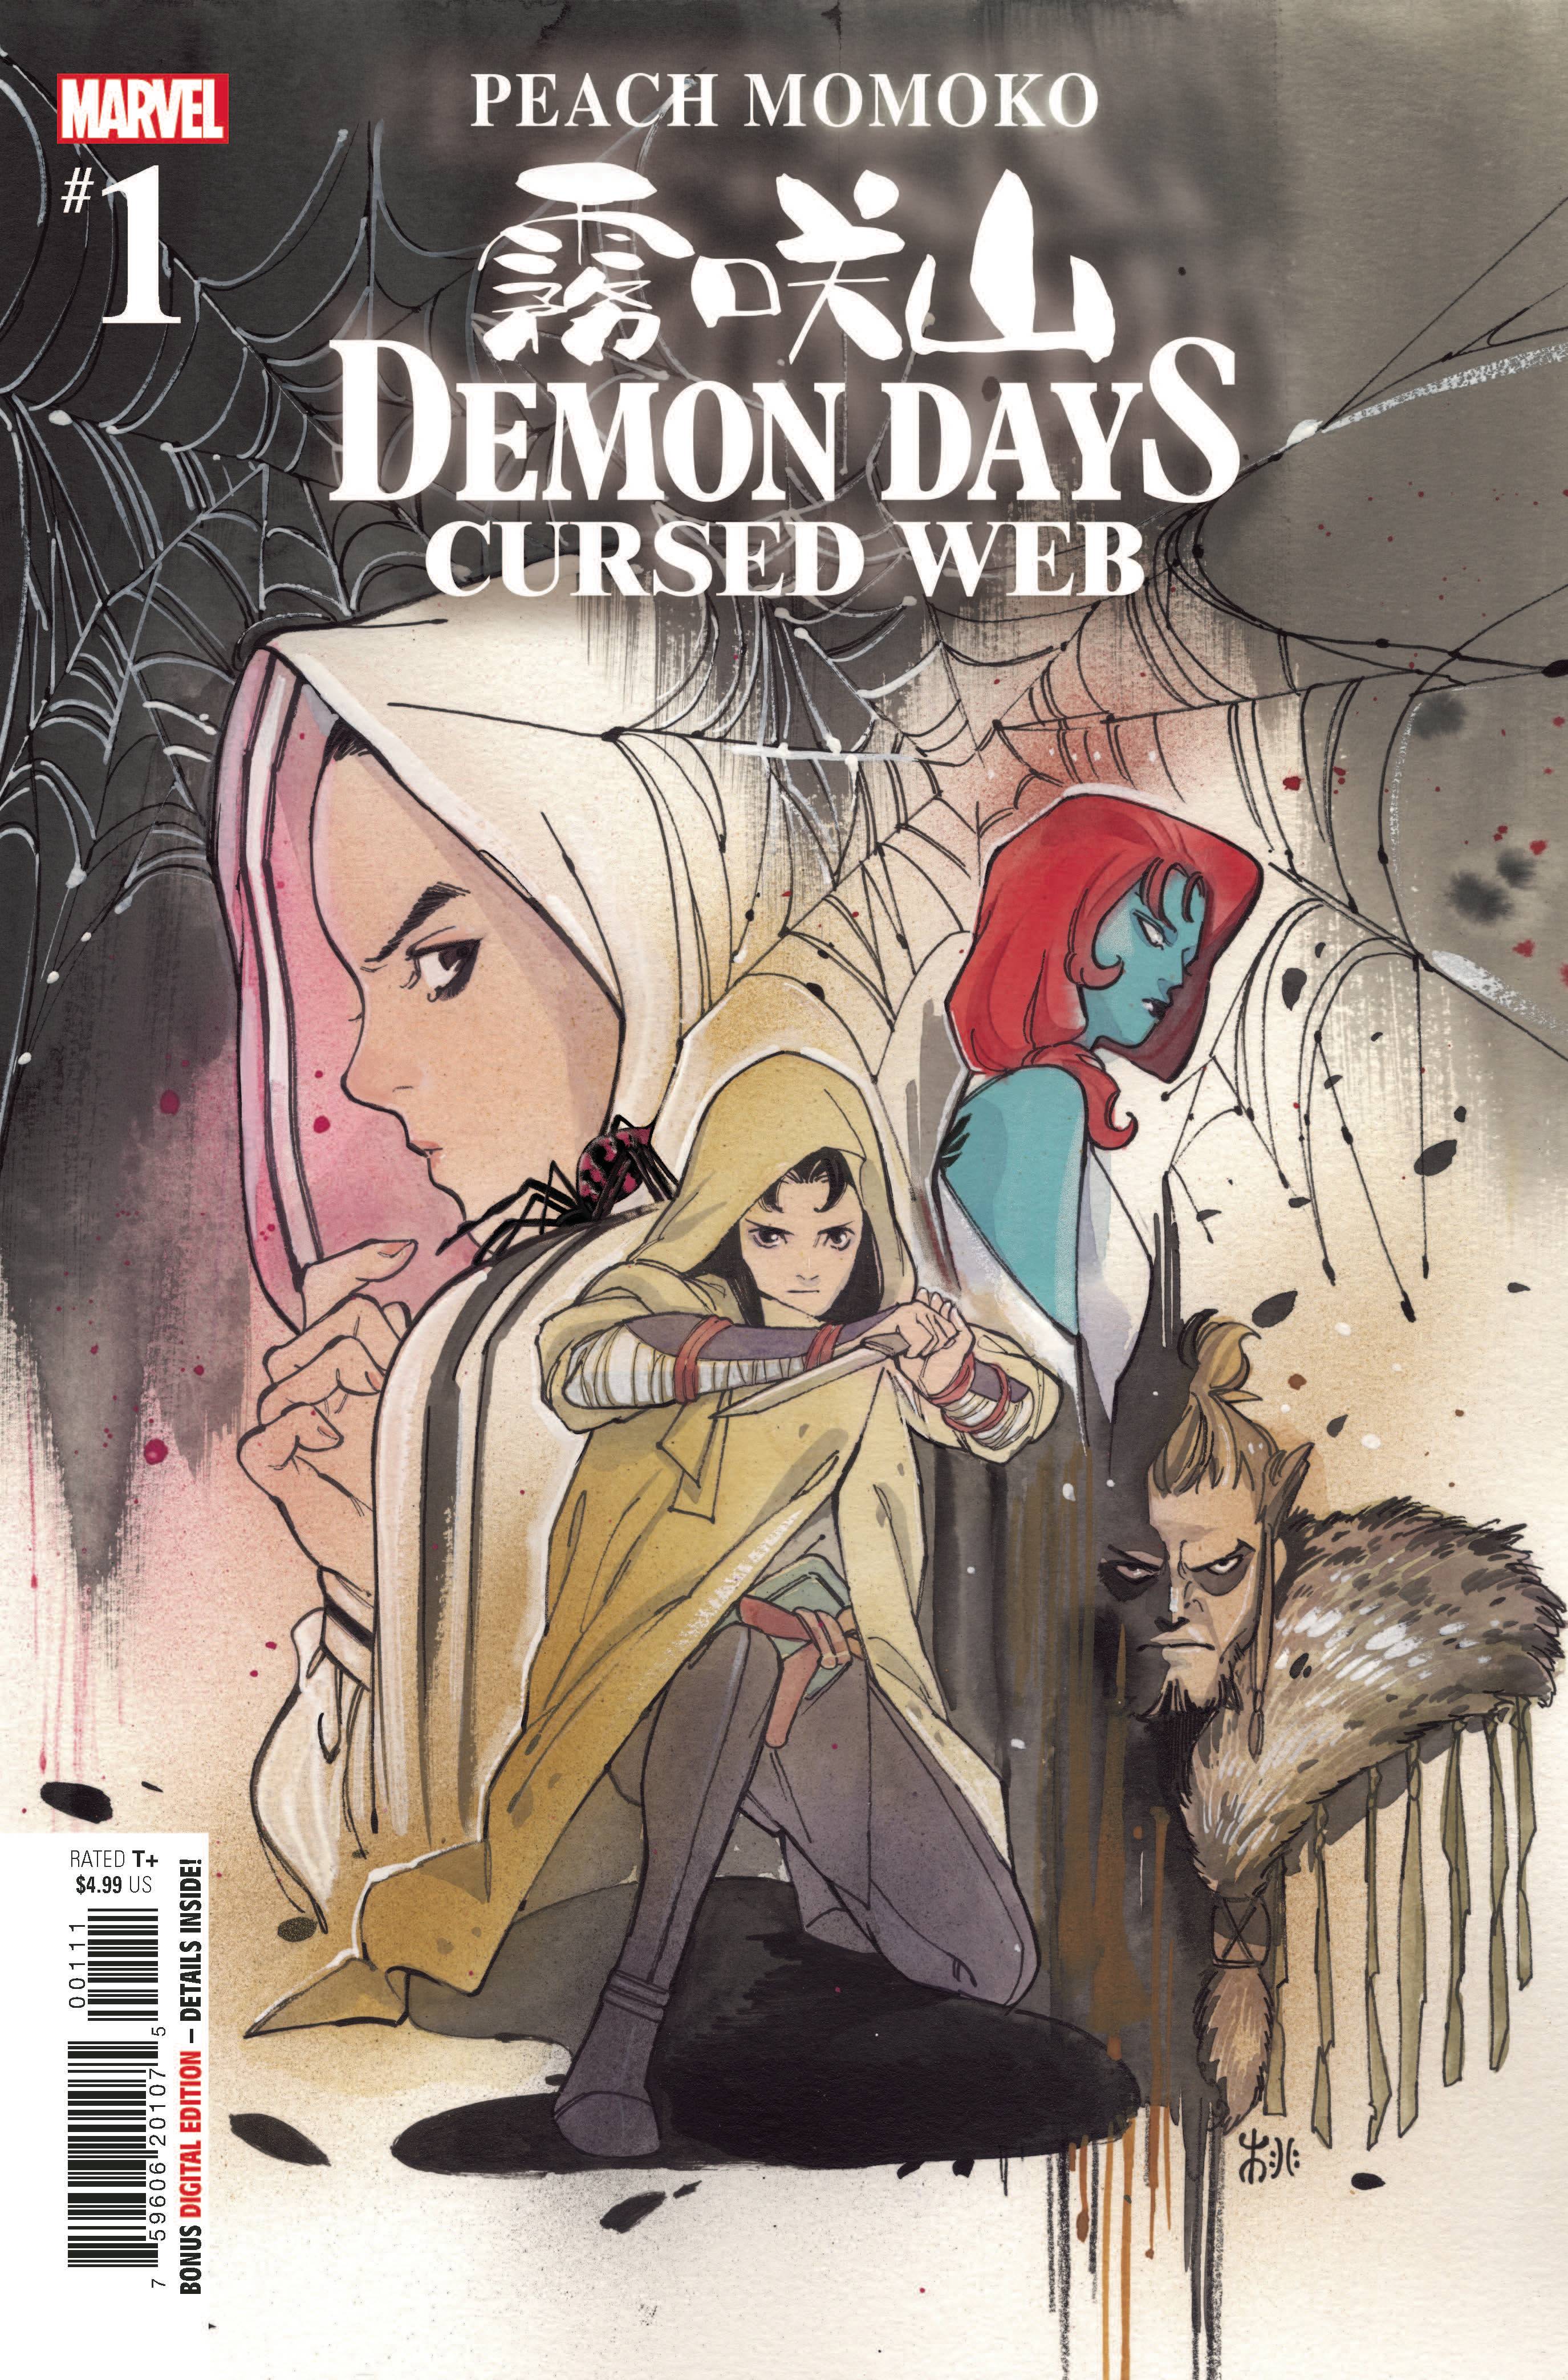 DEMON DAYS CURSED WEB #1 | L.A. Mood Comics and Games